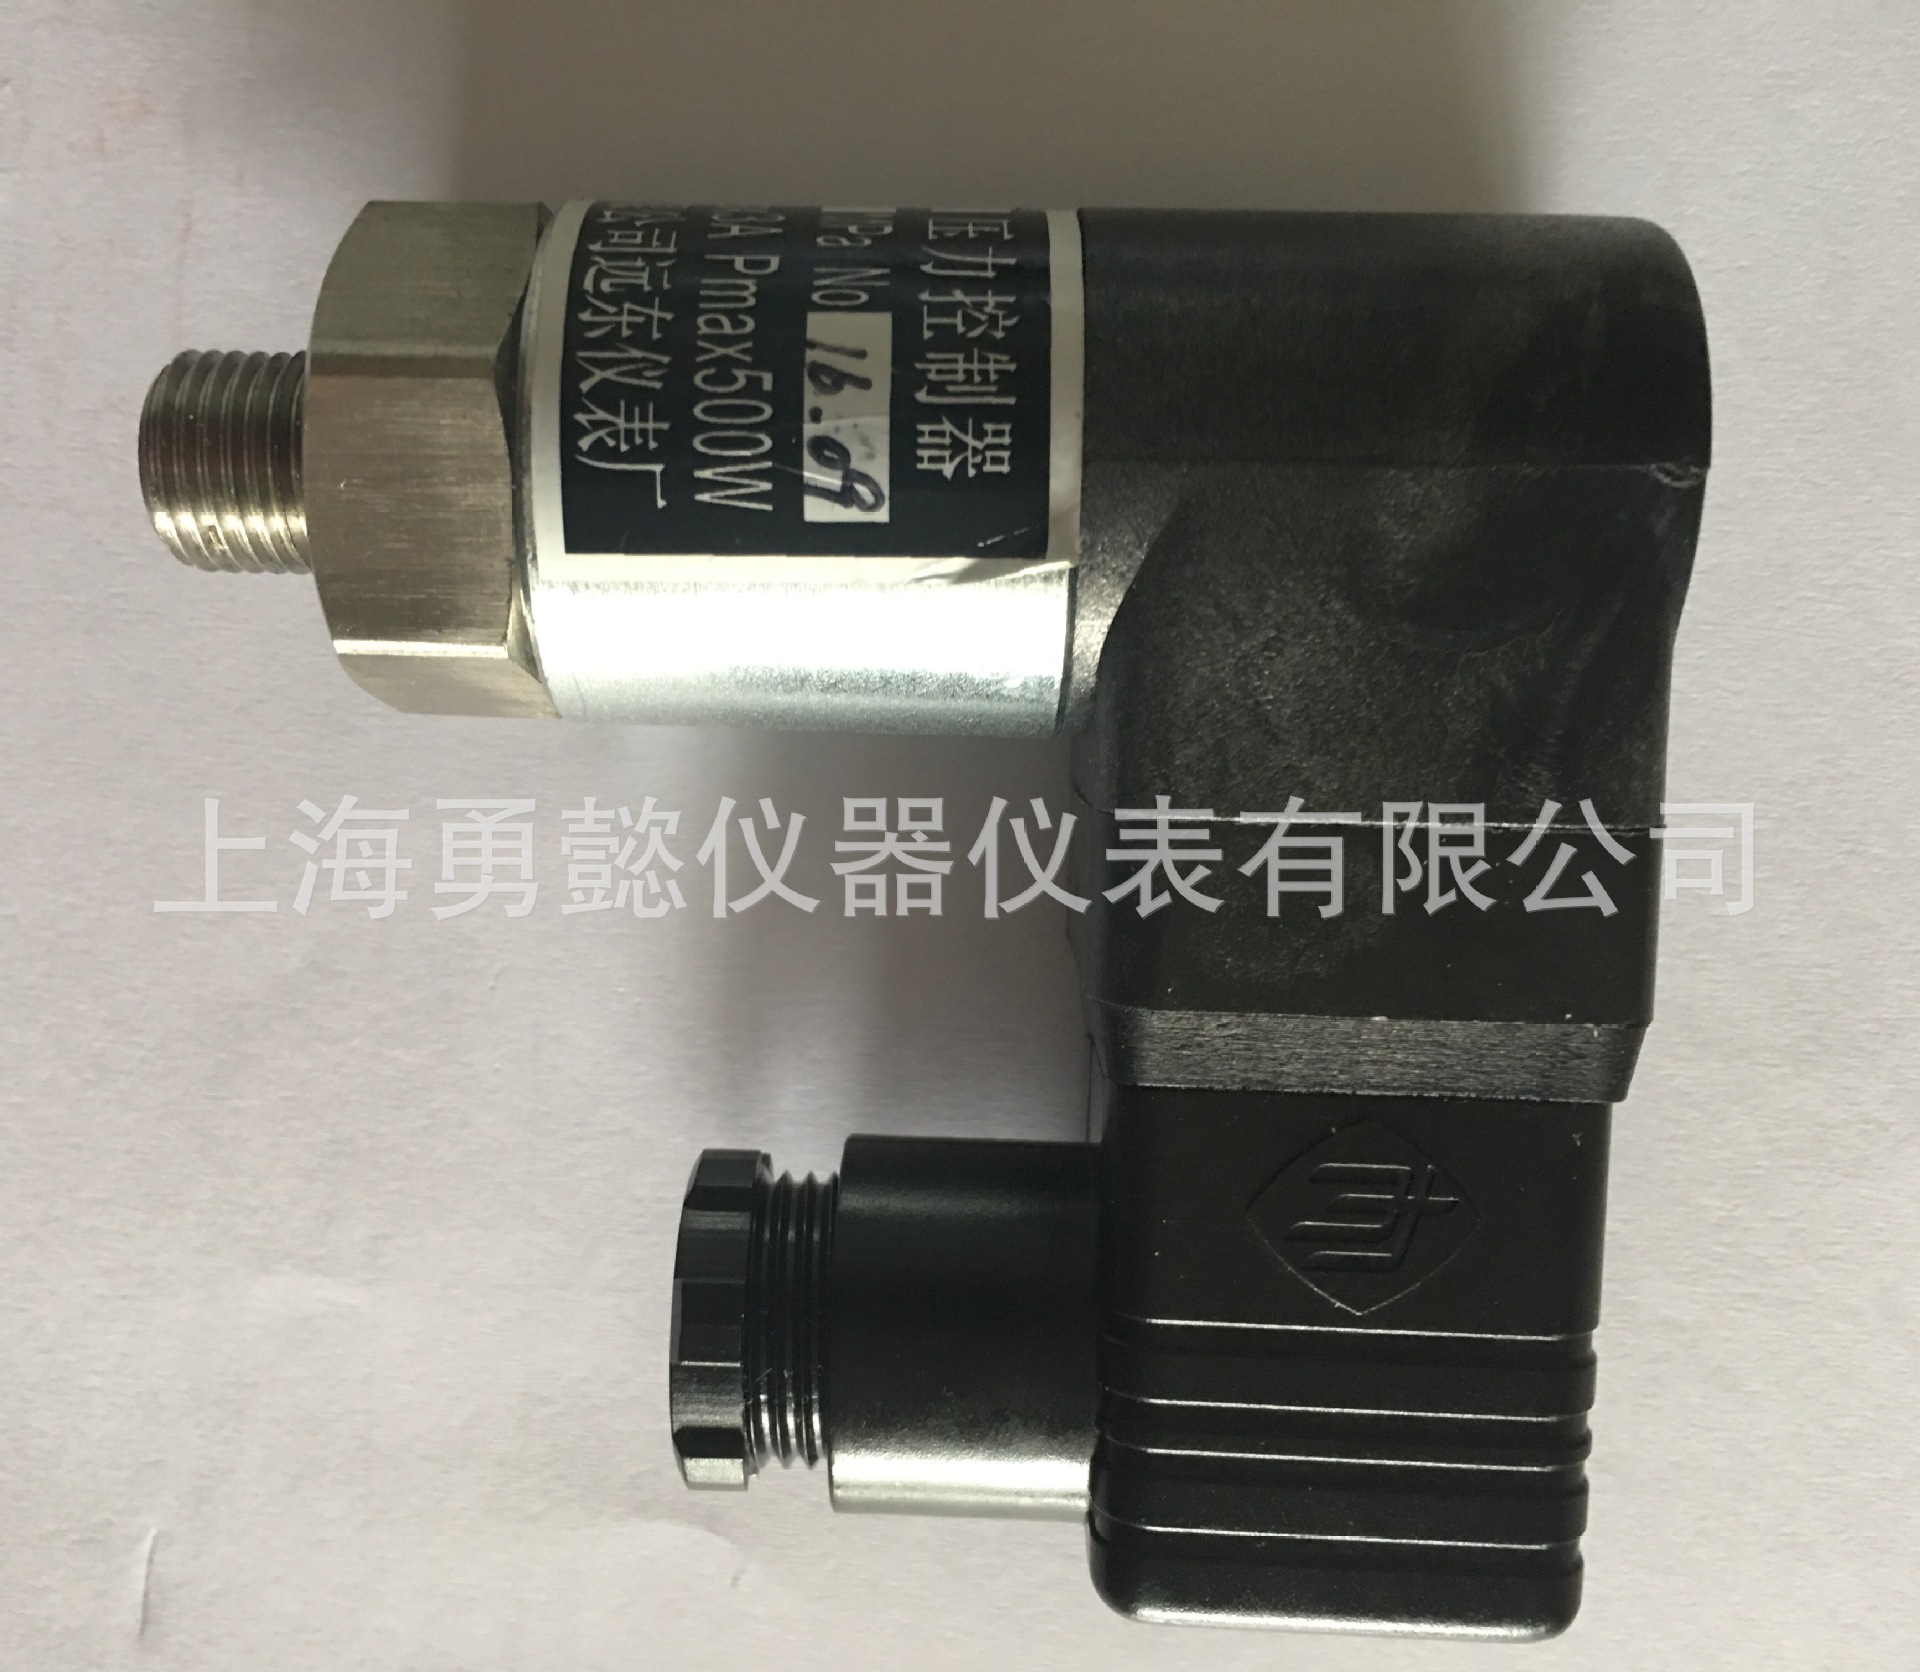 上海远东仪表厂 YPK-10 压力控制器 YPK-10 0-4mpa